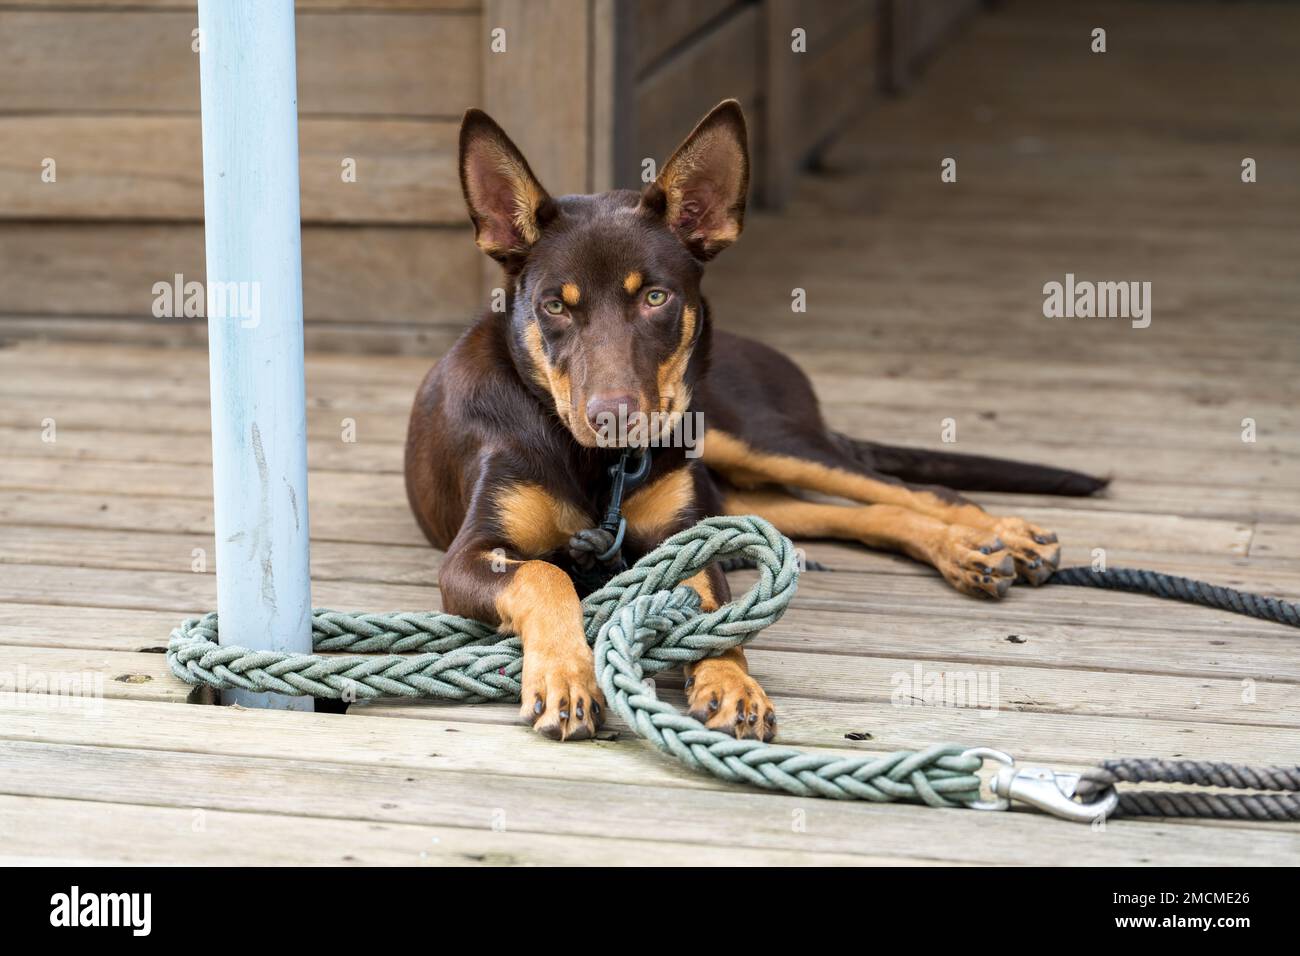 Junger, roter und brauner australischer Kelpie-Hund, der sich hinlegte, mit gestochen Ohren, in die Kamera schaute. Stockfoto